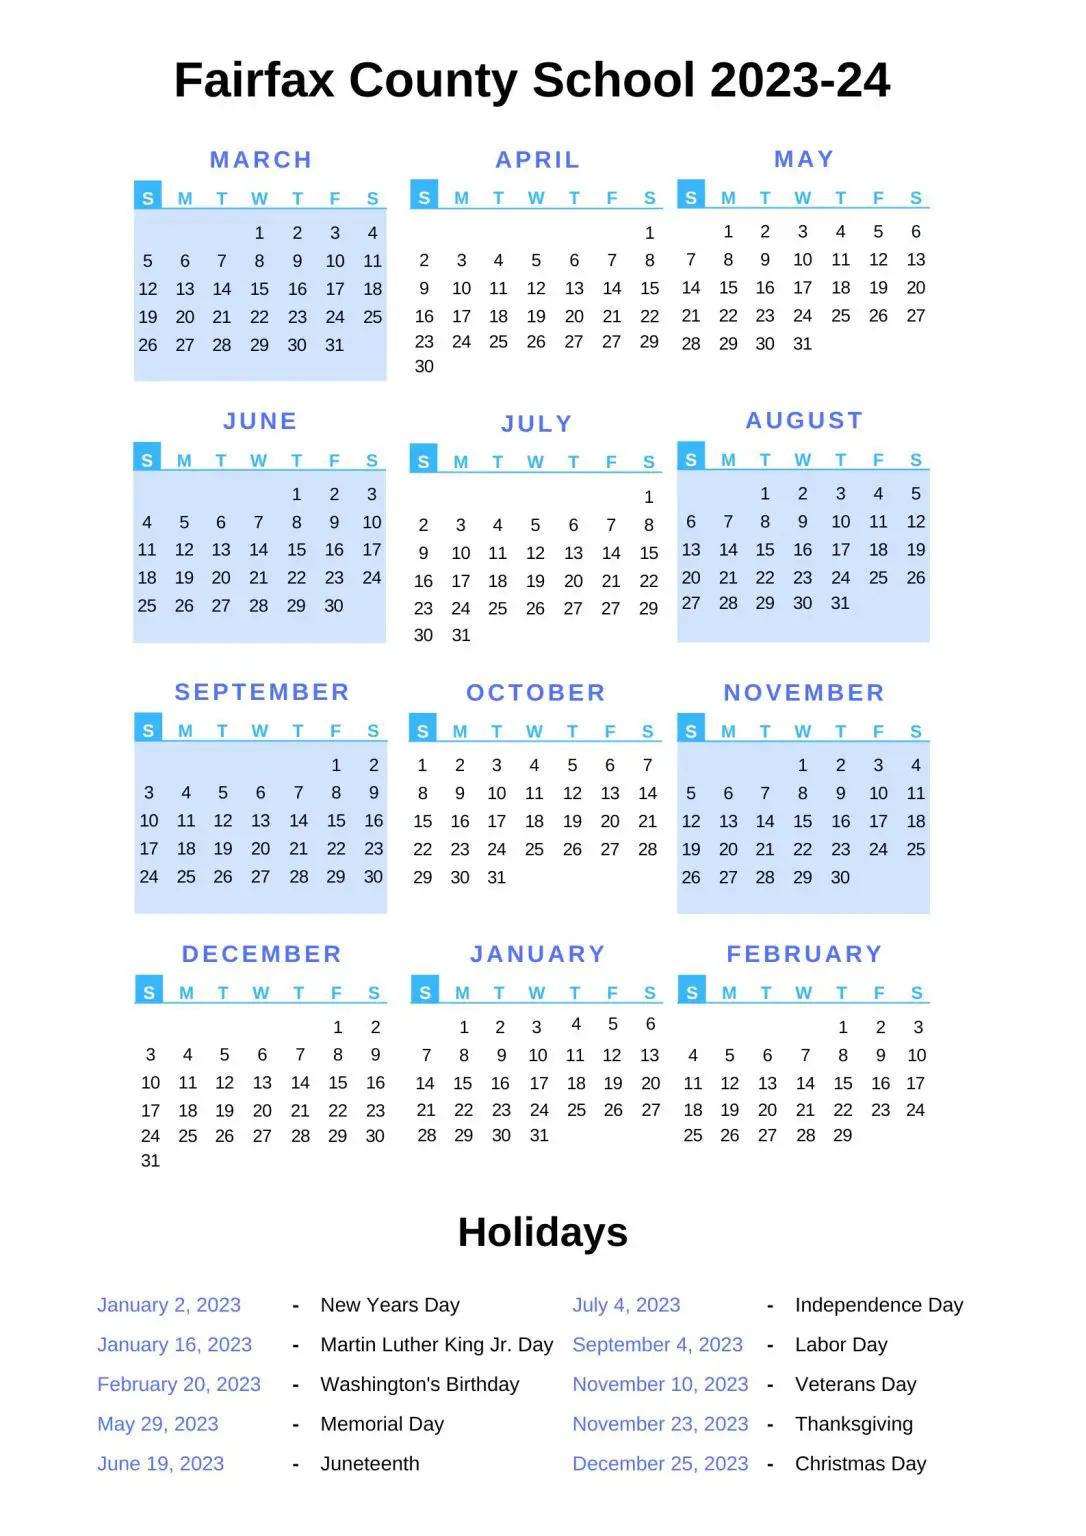 Fairfax County School Calendar Archives - County School Calendar 2023-24